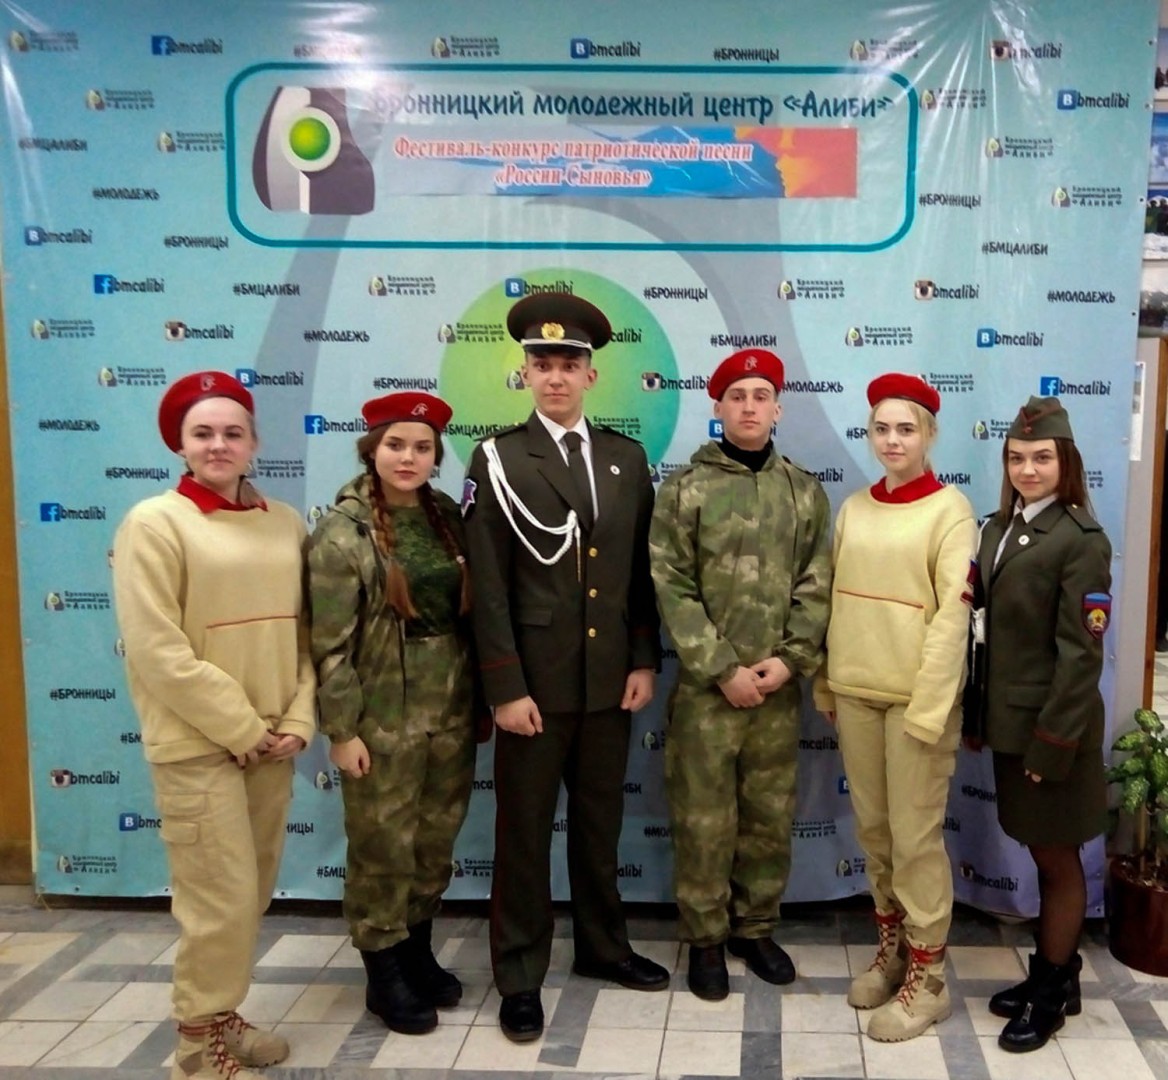 Воспитанники патриотического кружка Республики приняли участие в культурной программе в Московской области